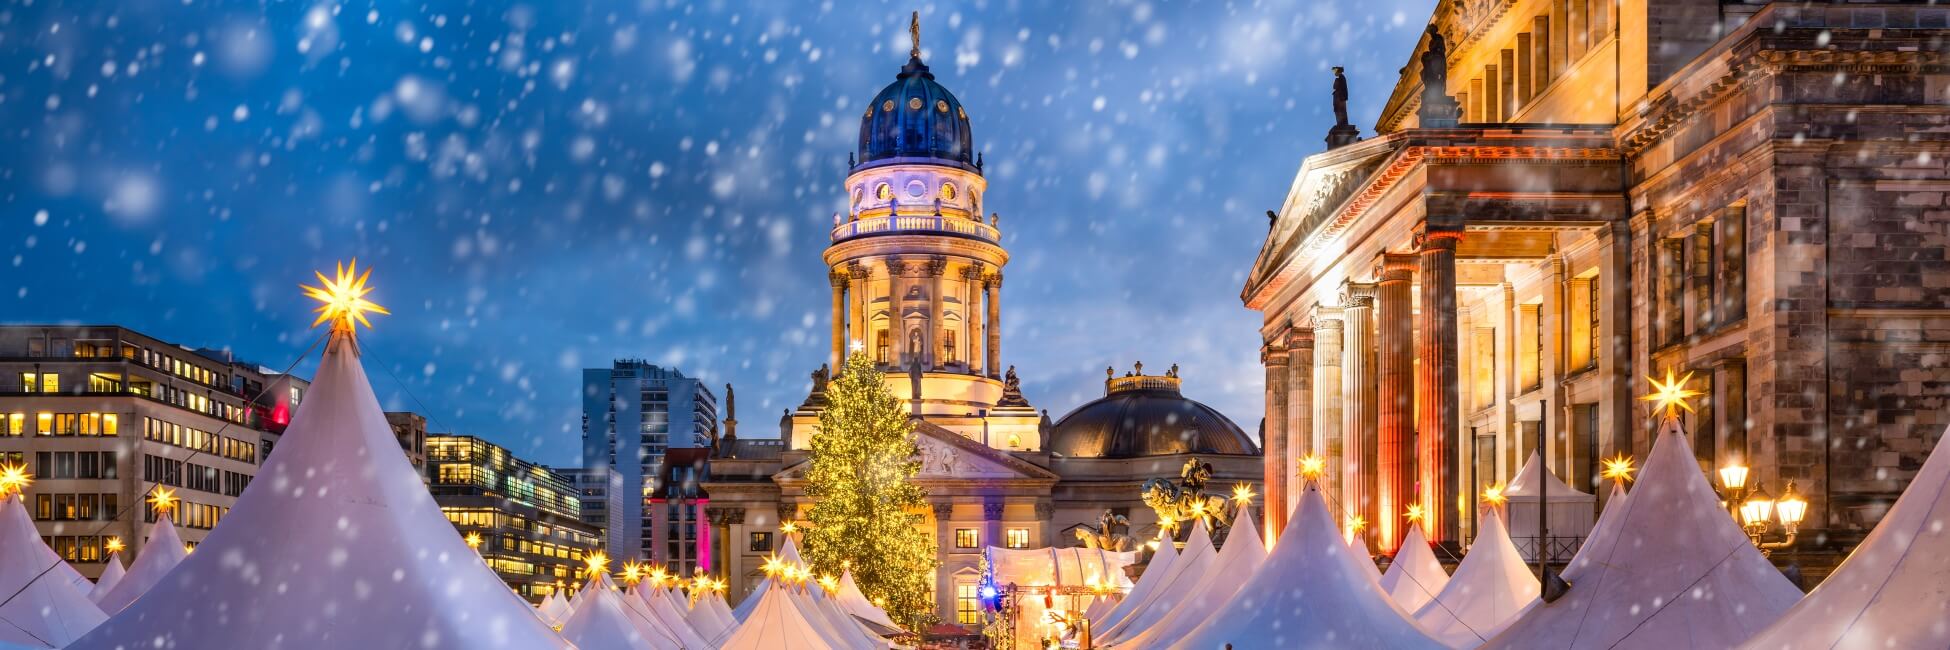 NMB_PP - El encanto de Navidad en Berlín y Potsdam